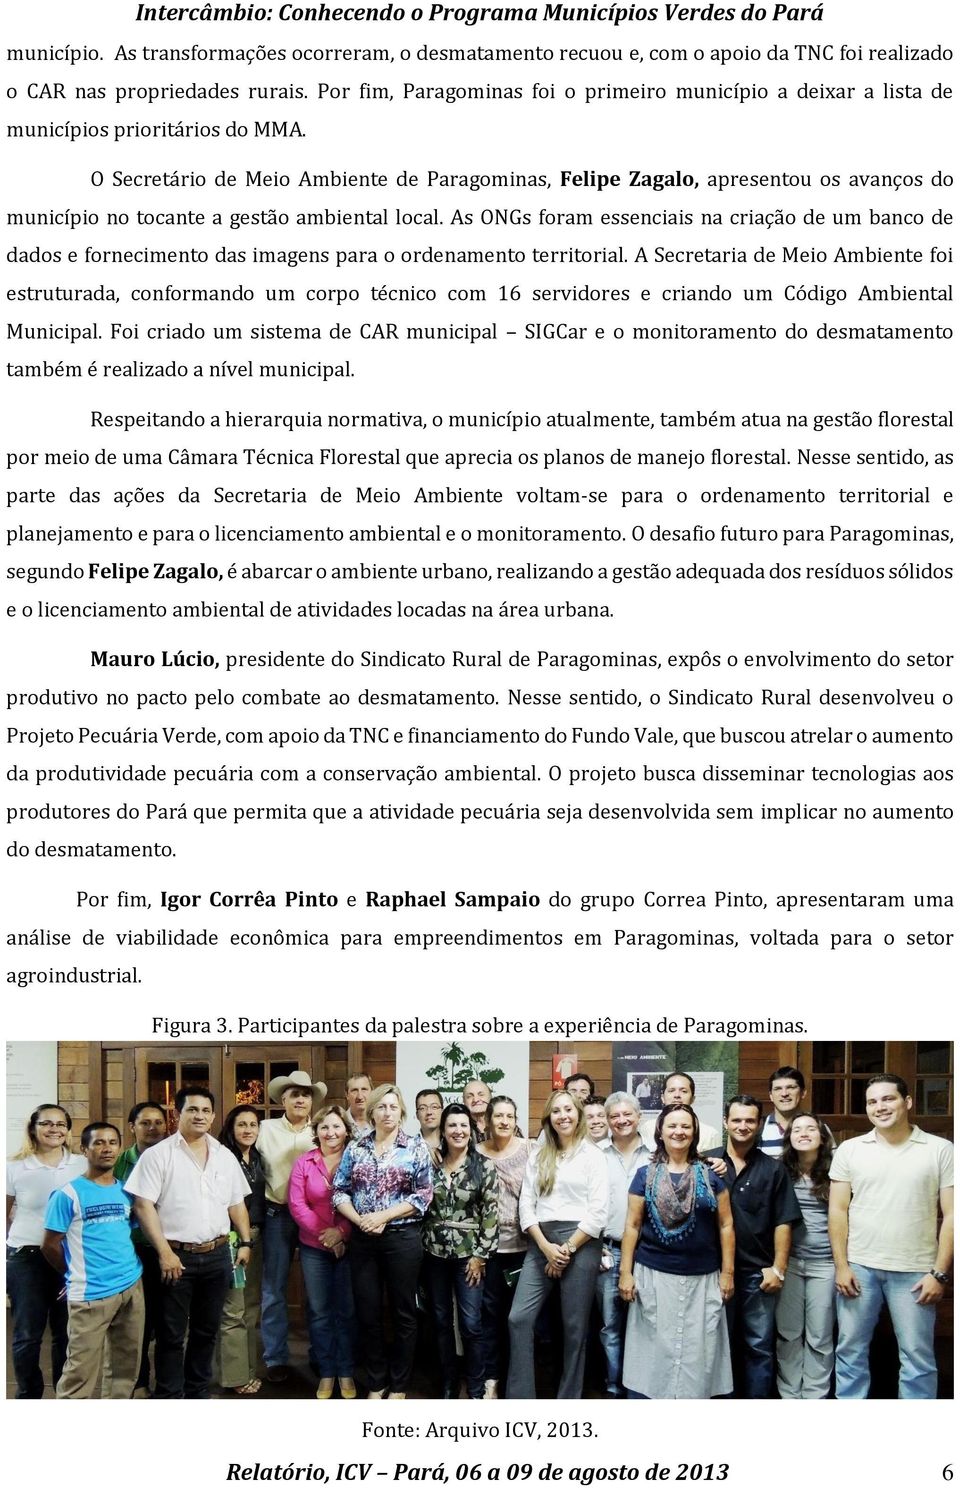 O Secretário de Meio Ambiente de Paragominas, Felipe Zagalo, apresentou os avanços do município no tocante a gestão ambiental local.